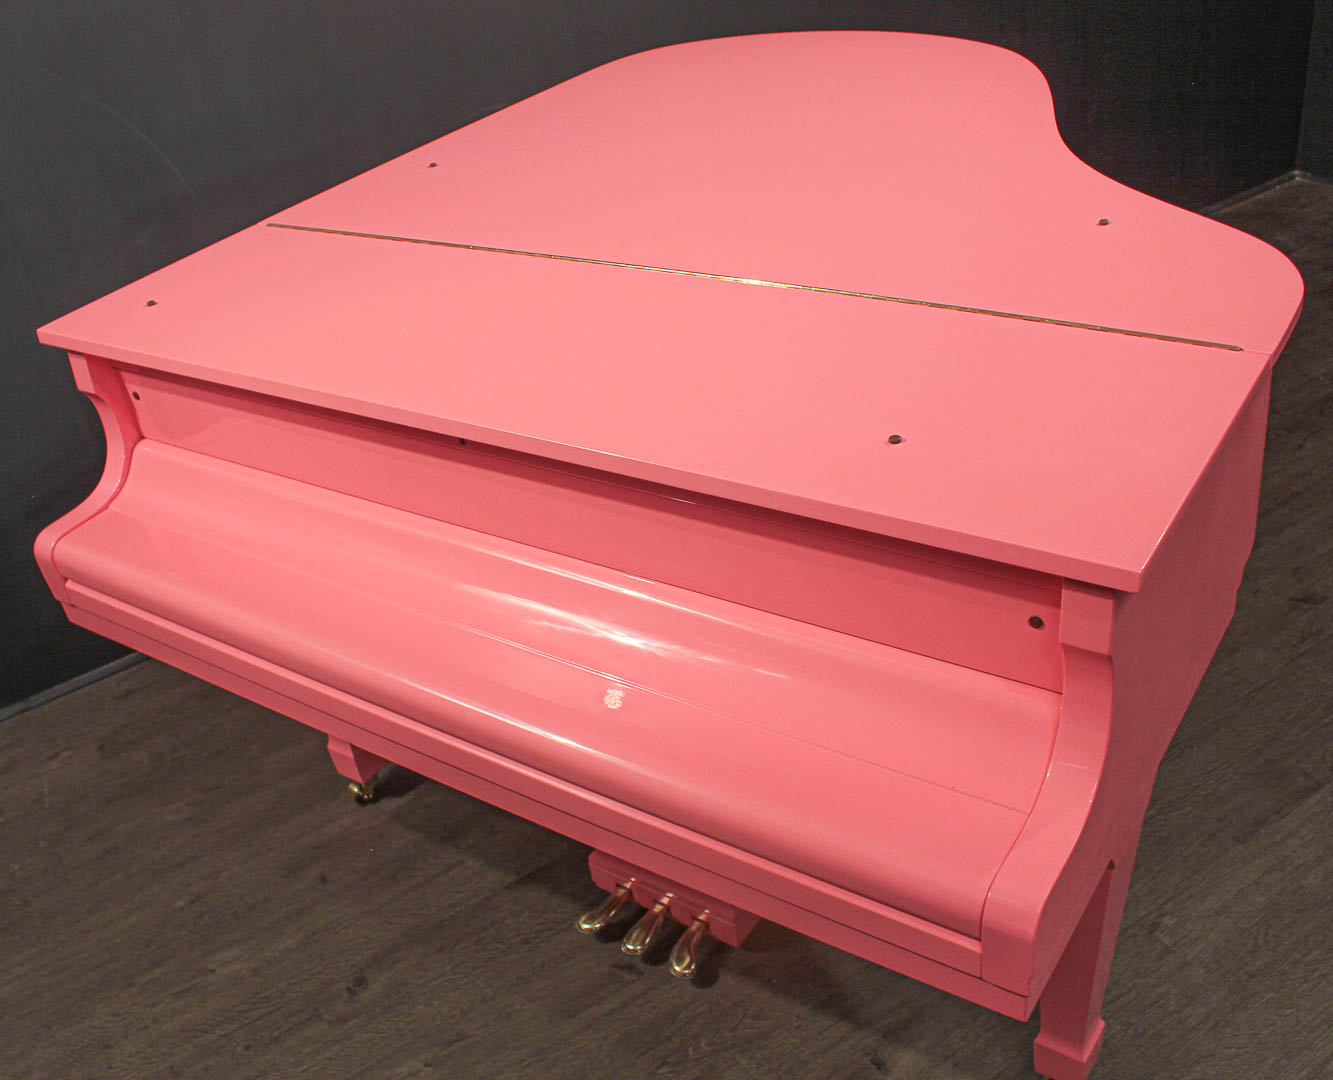 Kawai Grand Piano 5'10'' KG-2 Island Pink | Grand Pianos